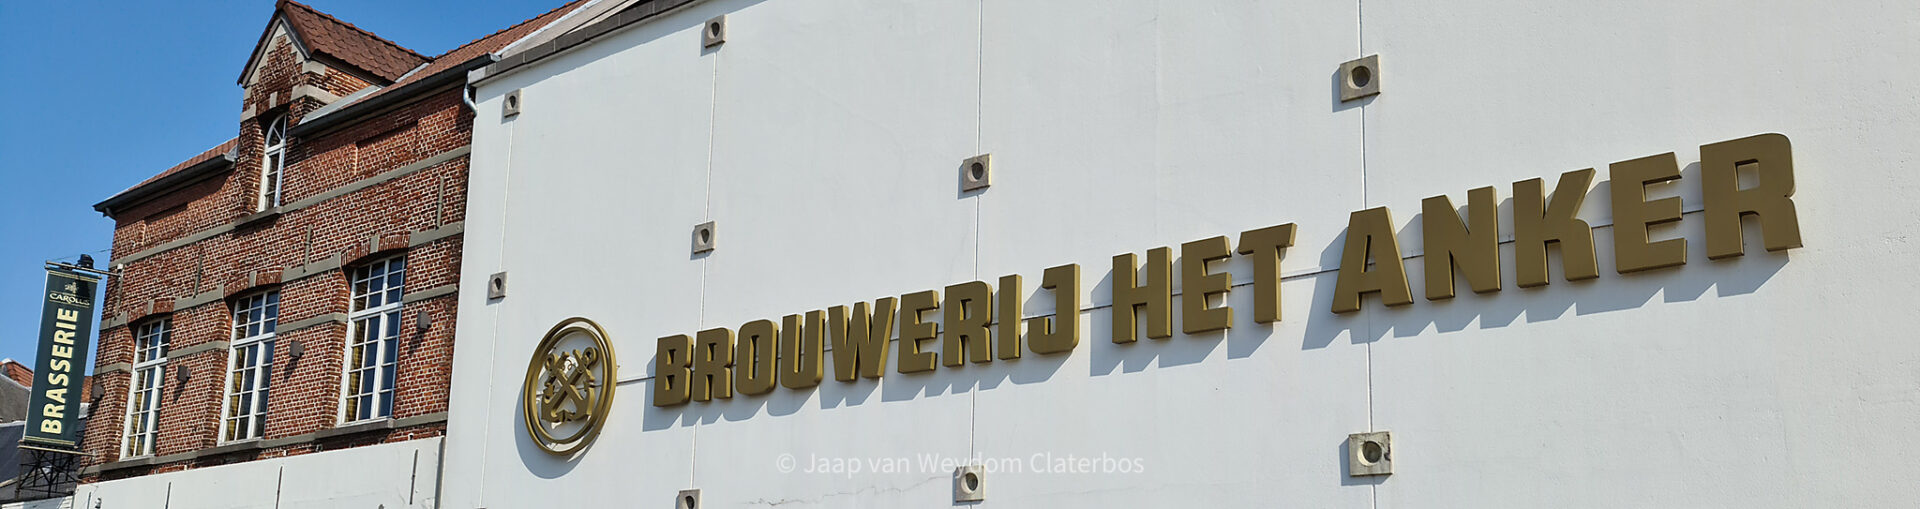 Brouwerij Het Anker, Mechelen België